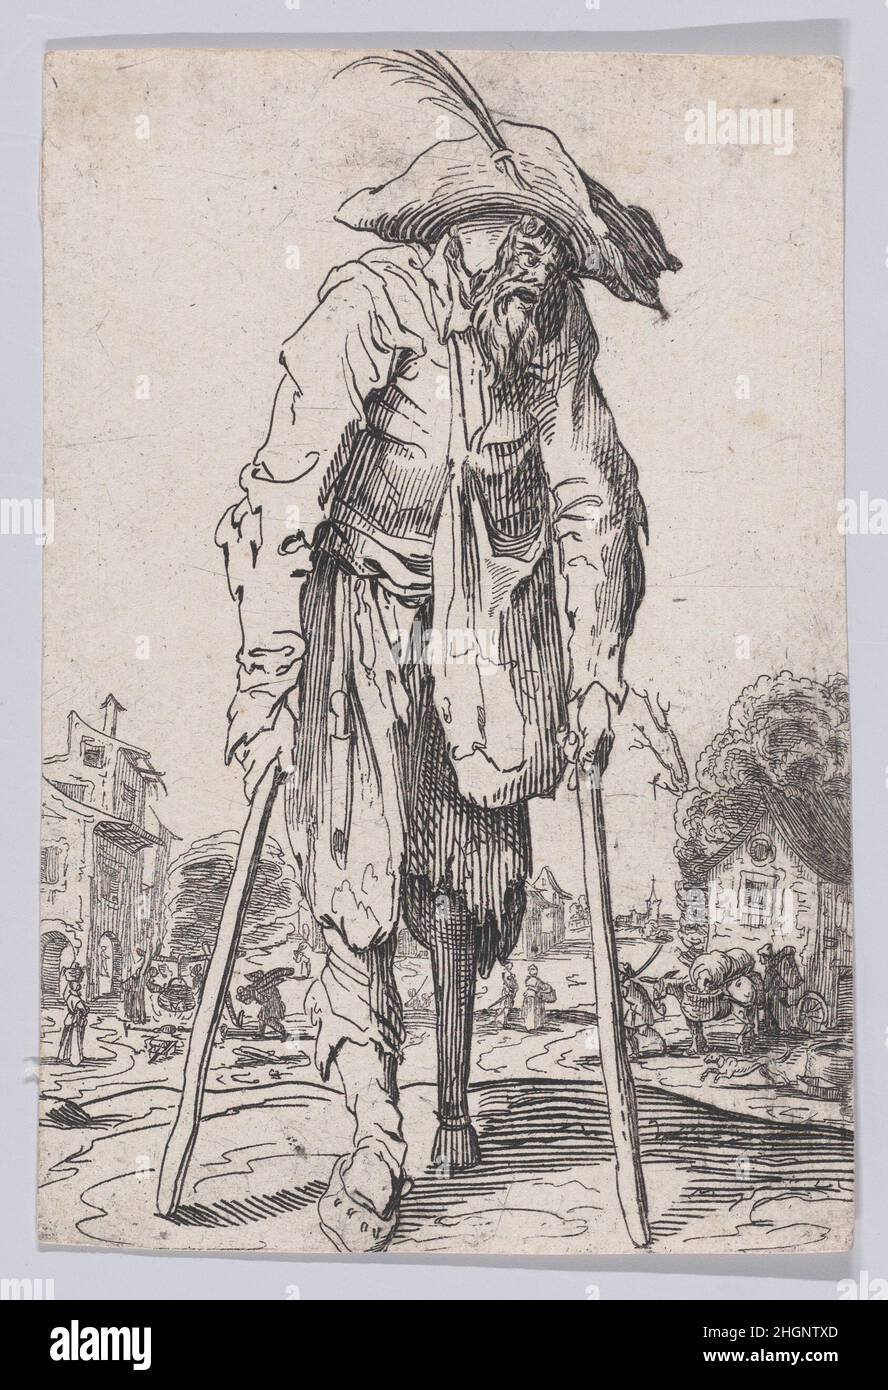 Reverse Copy of Le Mendiant a la Jambe de Bois (The Beggar with the Wooden Leg), from Les Gueux suite appelée aussi Les Mendiants, Les Baroni, ou Les Barons (The Beggars, also called the Barons) 17th century Anonymous. Reverse Copy of Le Mendiant a la Jambe de Bois (The Beggar with the Wooden Leg), from Les Gueux suite appelée aussi Les Mendiants, Les Baroni, ou Les Barons (The Beggars, also called the Barons). Les Gueux suite appelée aussi Les Mendiants, Les Baroni, ou Les Barons. Anonymous. 17th century. Etching. Prints Stock Photo